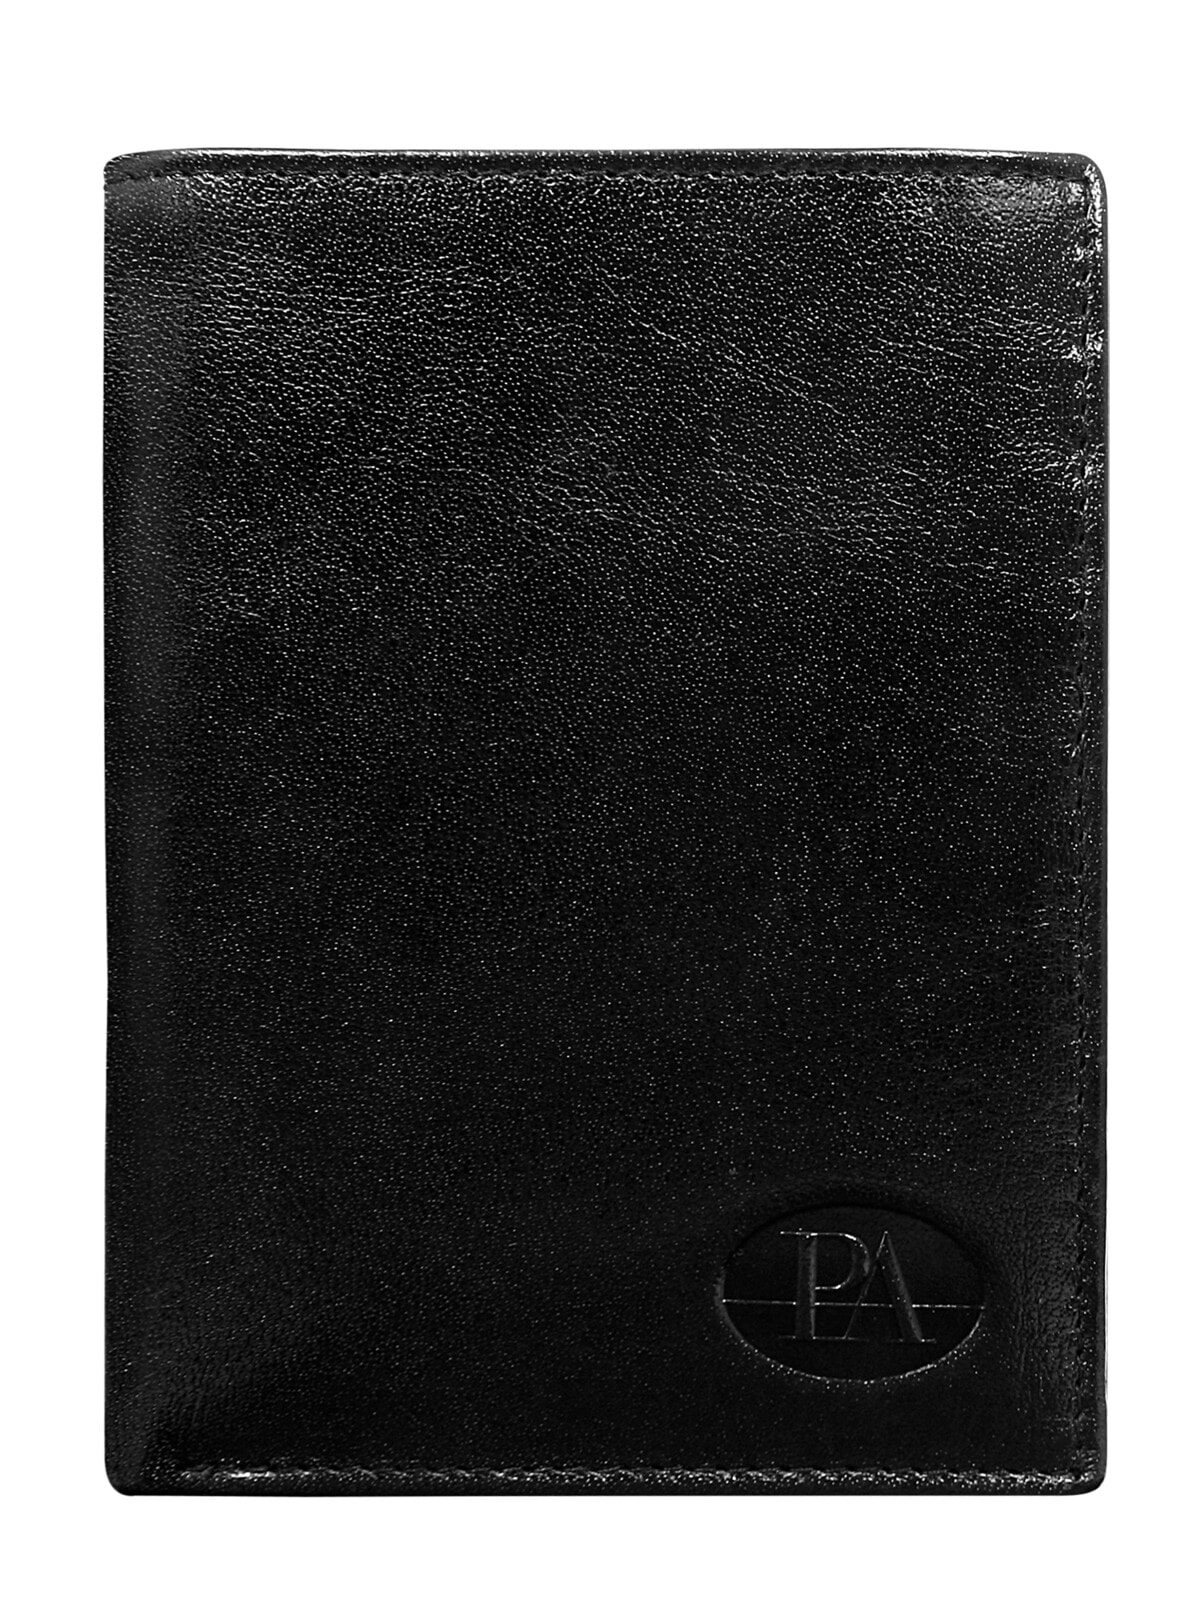 Мужское портмоне кожаное черное вертикальное без застежки Portfel-CE-PR-PW-003-BTU.28-czarny	Factory Price